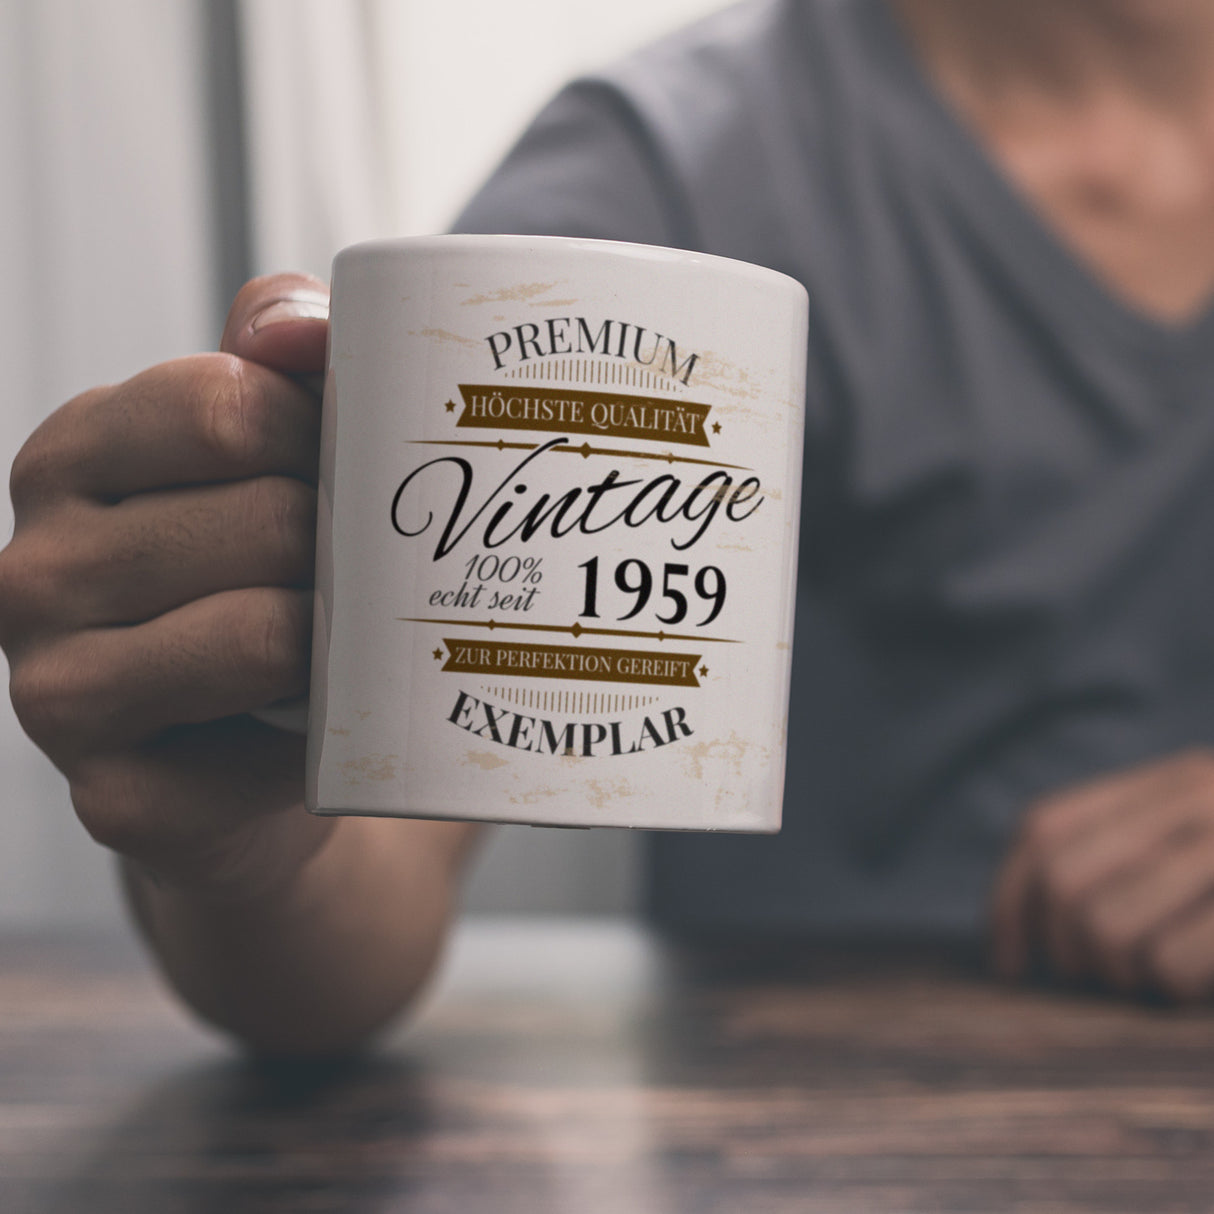 Vintage Tasse 100% echt seit 1959 - Premium Exemplar - Zur Perfektion gereift -